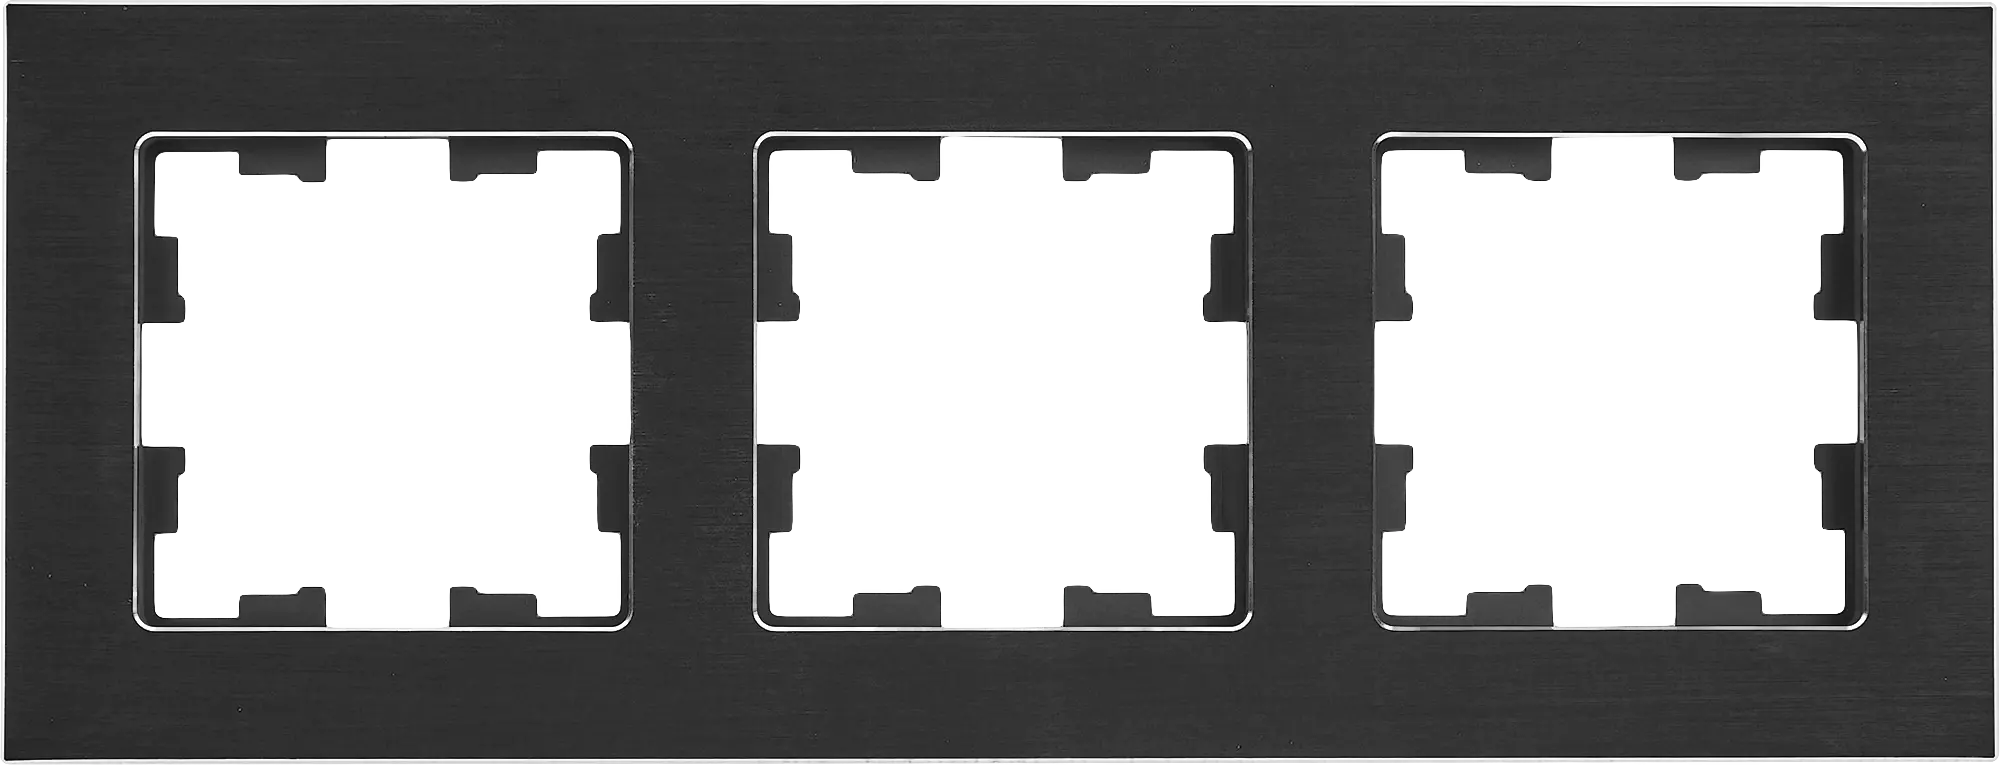 Рамка для розеток и выключателей Brite 3 поста металл цвет черный рамка для розеток и выключателей werkel metallic 2 поста металл глянцевый никель